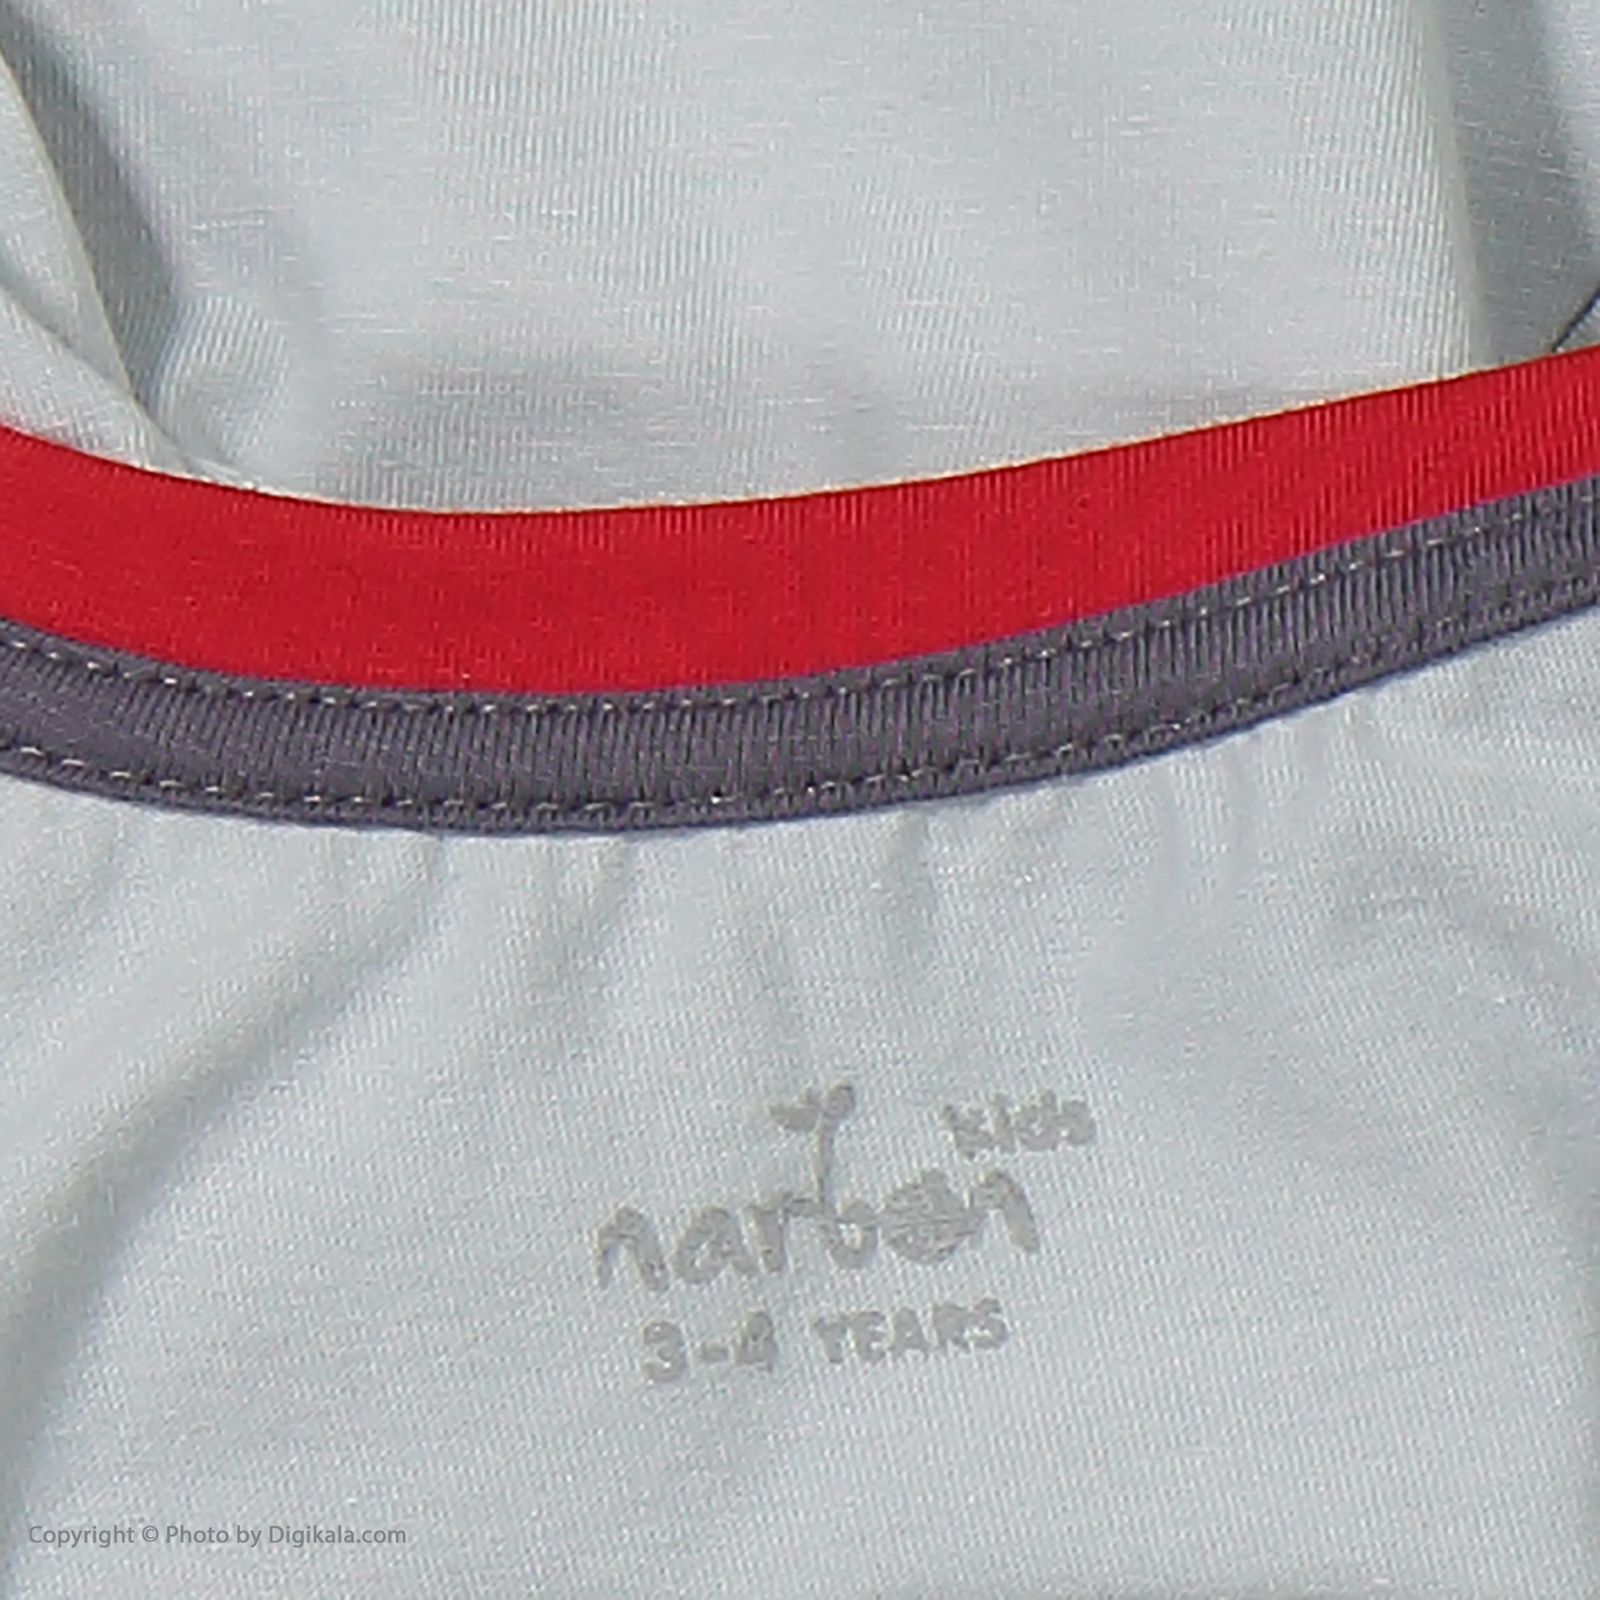 ست تی شرت و شلوار پسرانه ناربن مدل 1521302-93 -  - 8